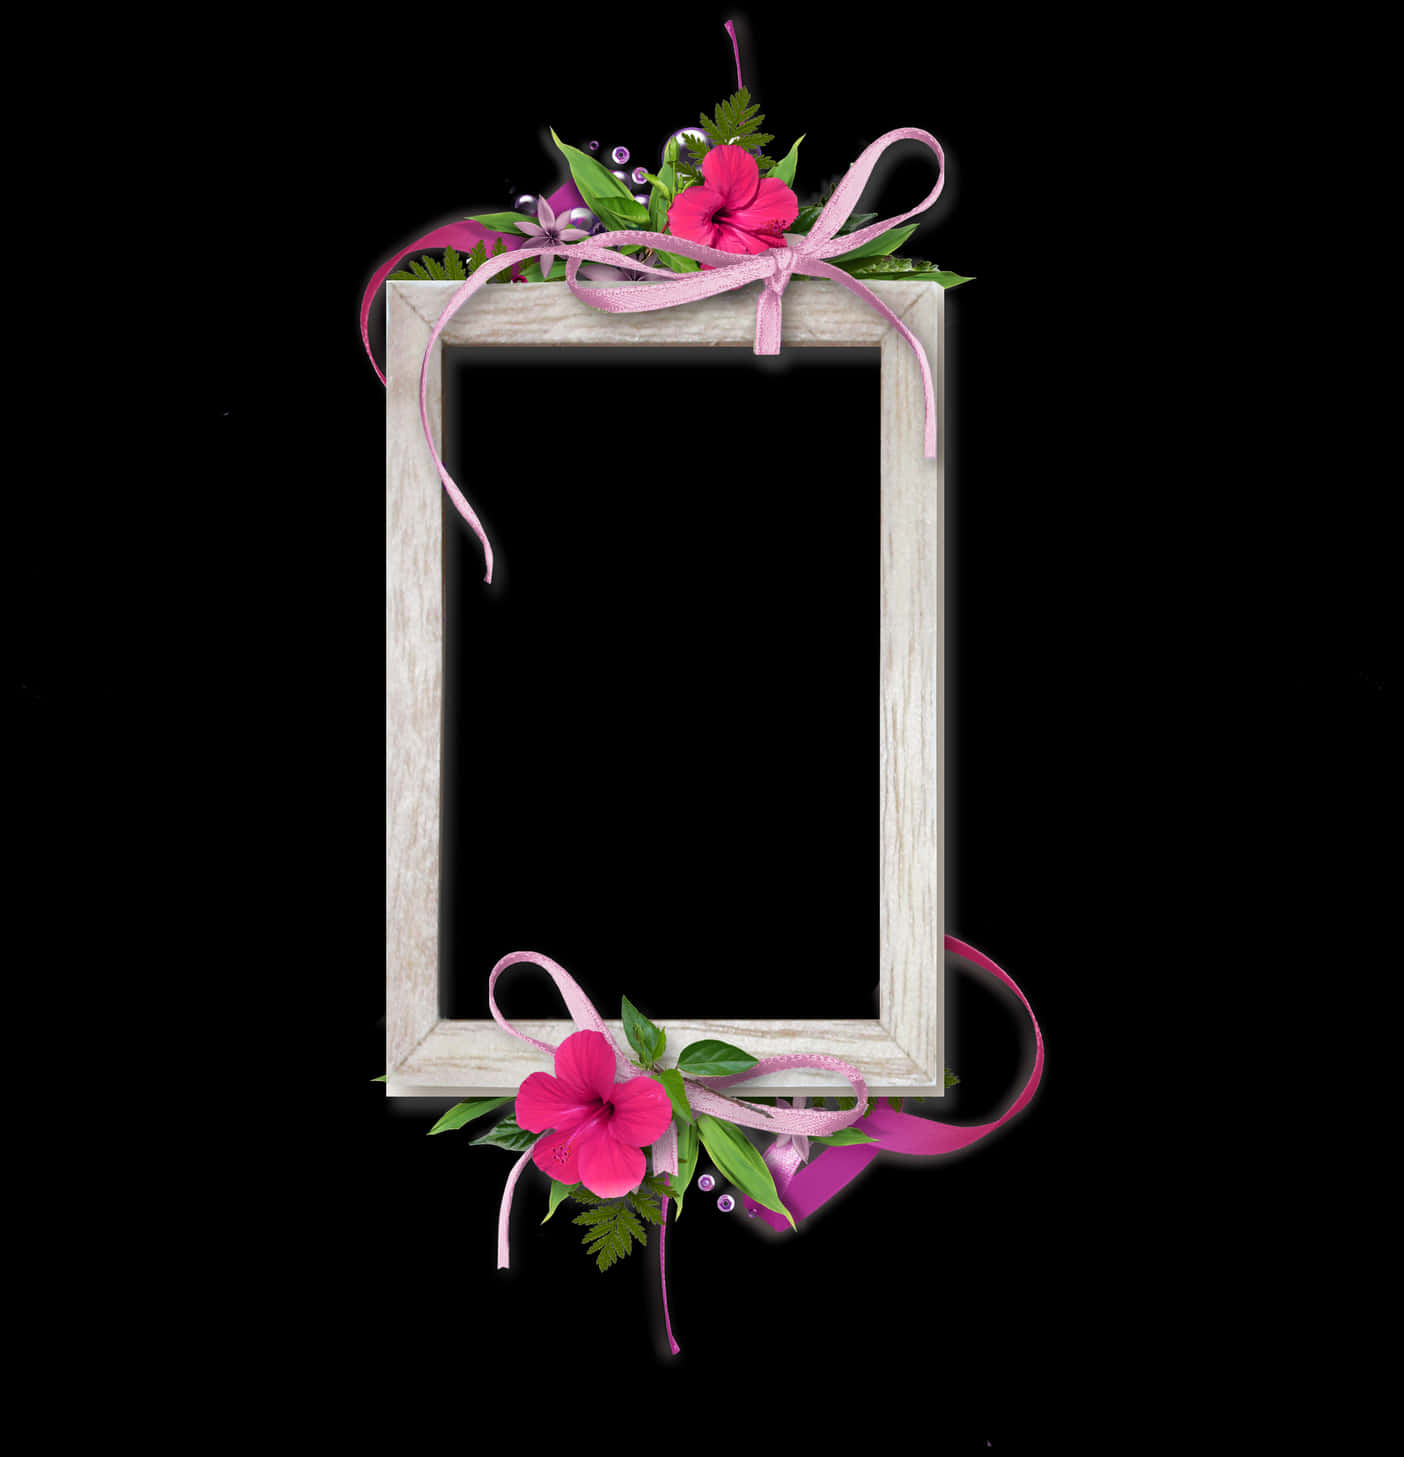 Floral Embellished Photo Frame PNG